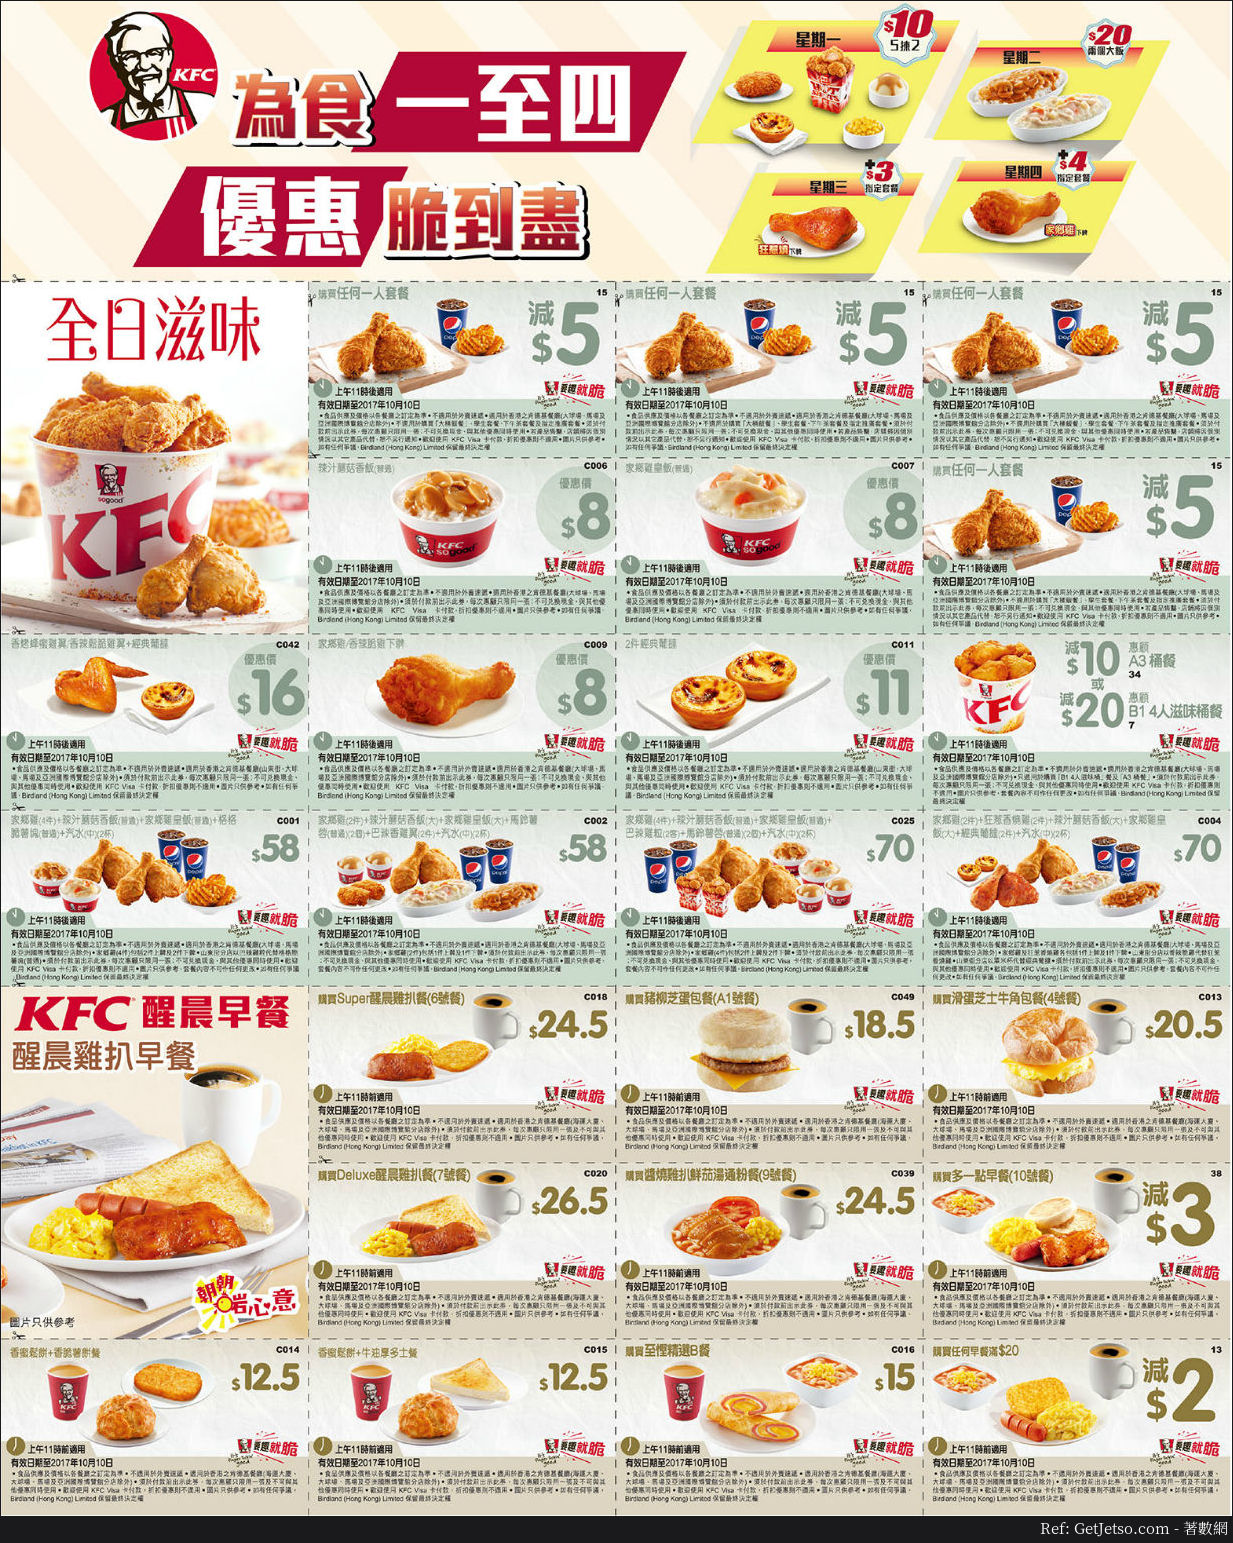 KFC為食一至四慳錢優惠券/早餐優惠券(至17年10月10日)圖片1